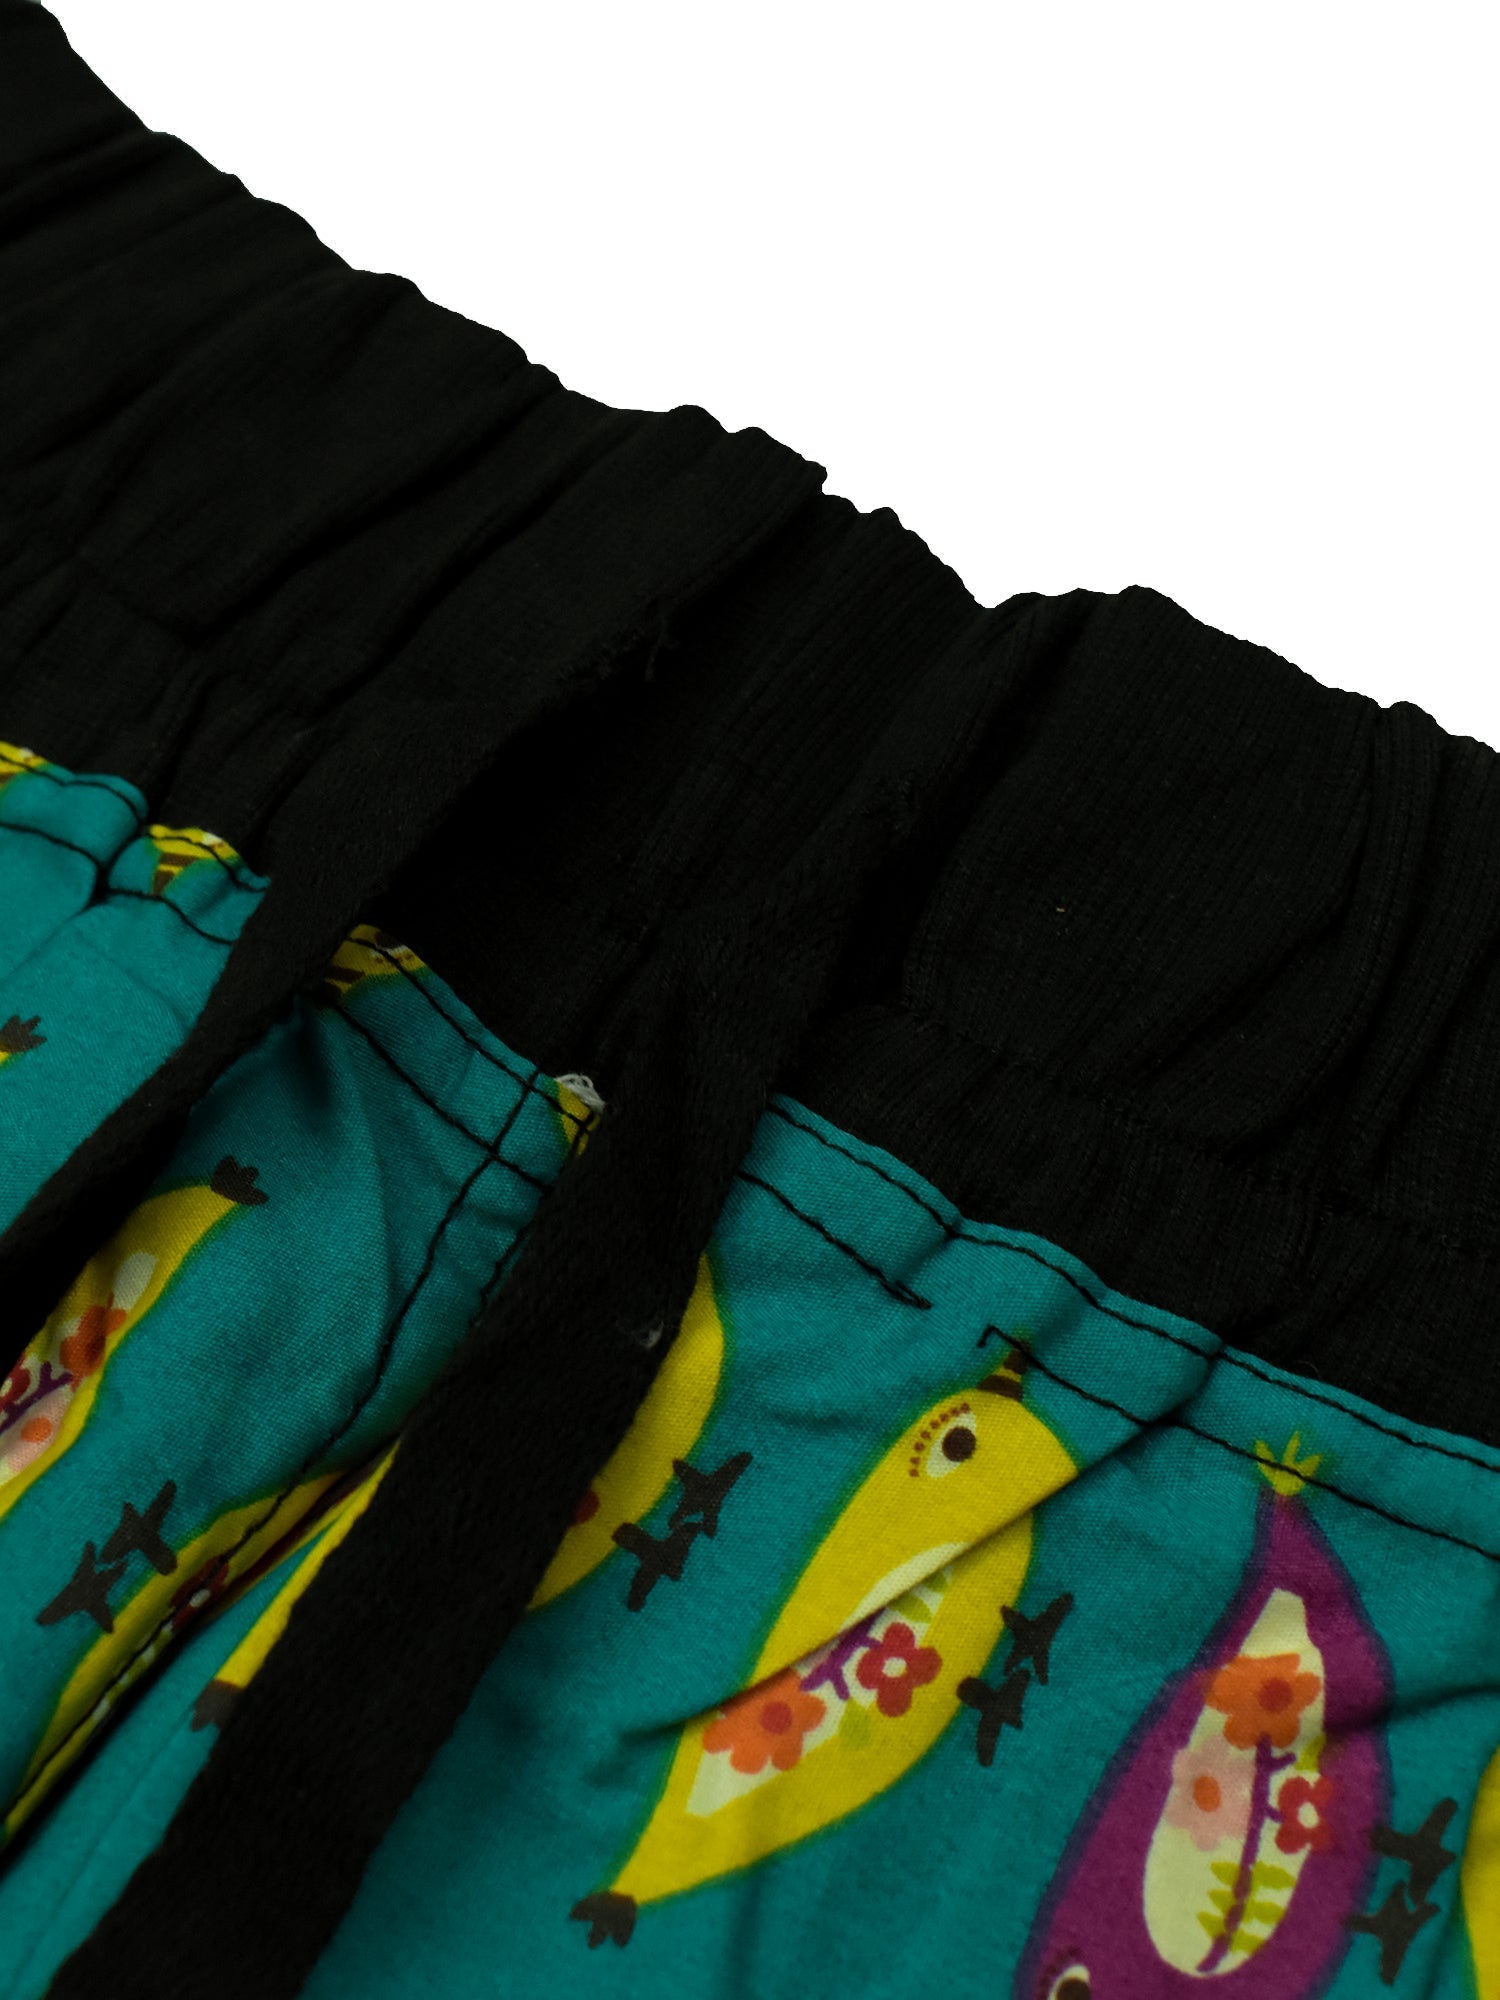 Next Cotton Stylish Capri For Ladies-Dark Sea Green Allover Print with Black Stripe-BR160